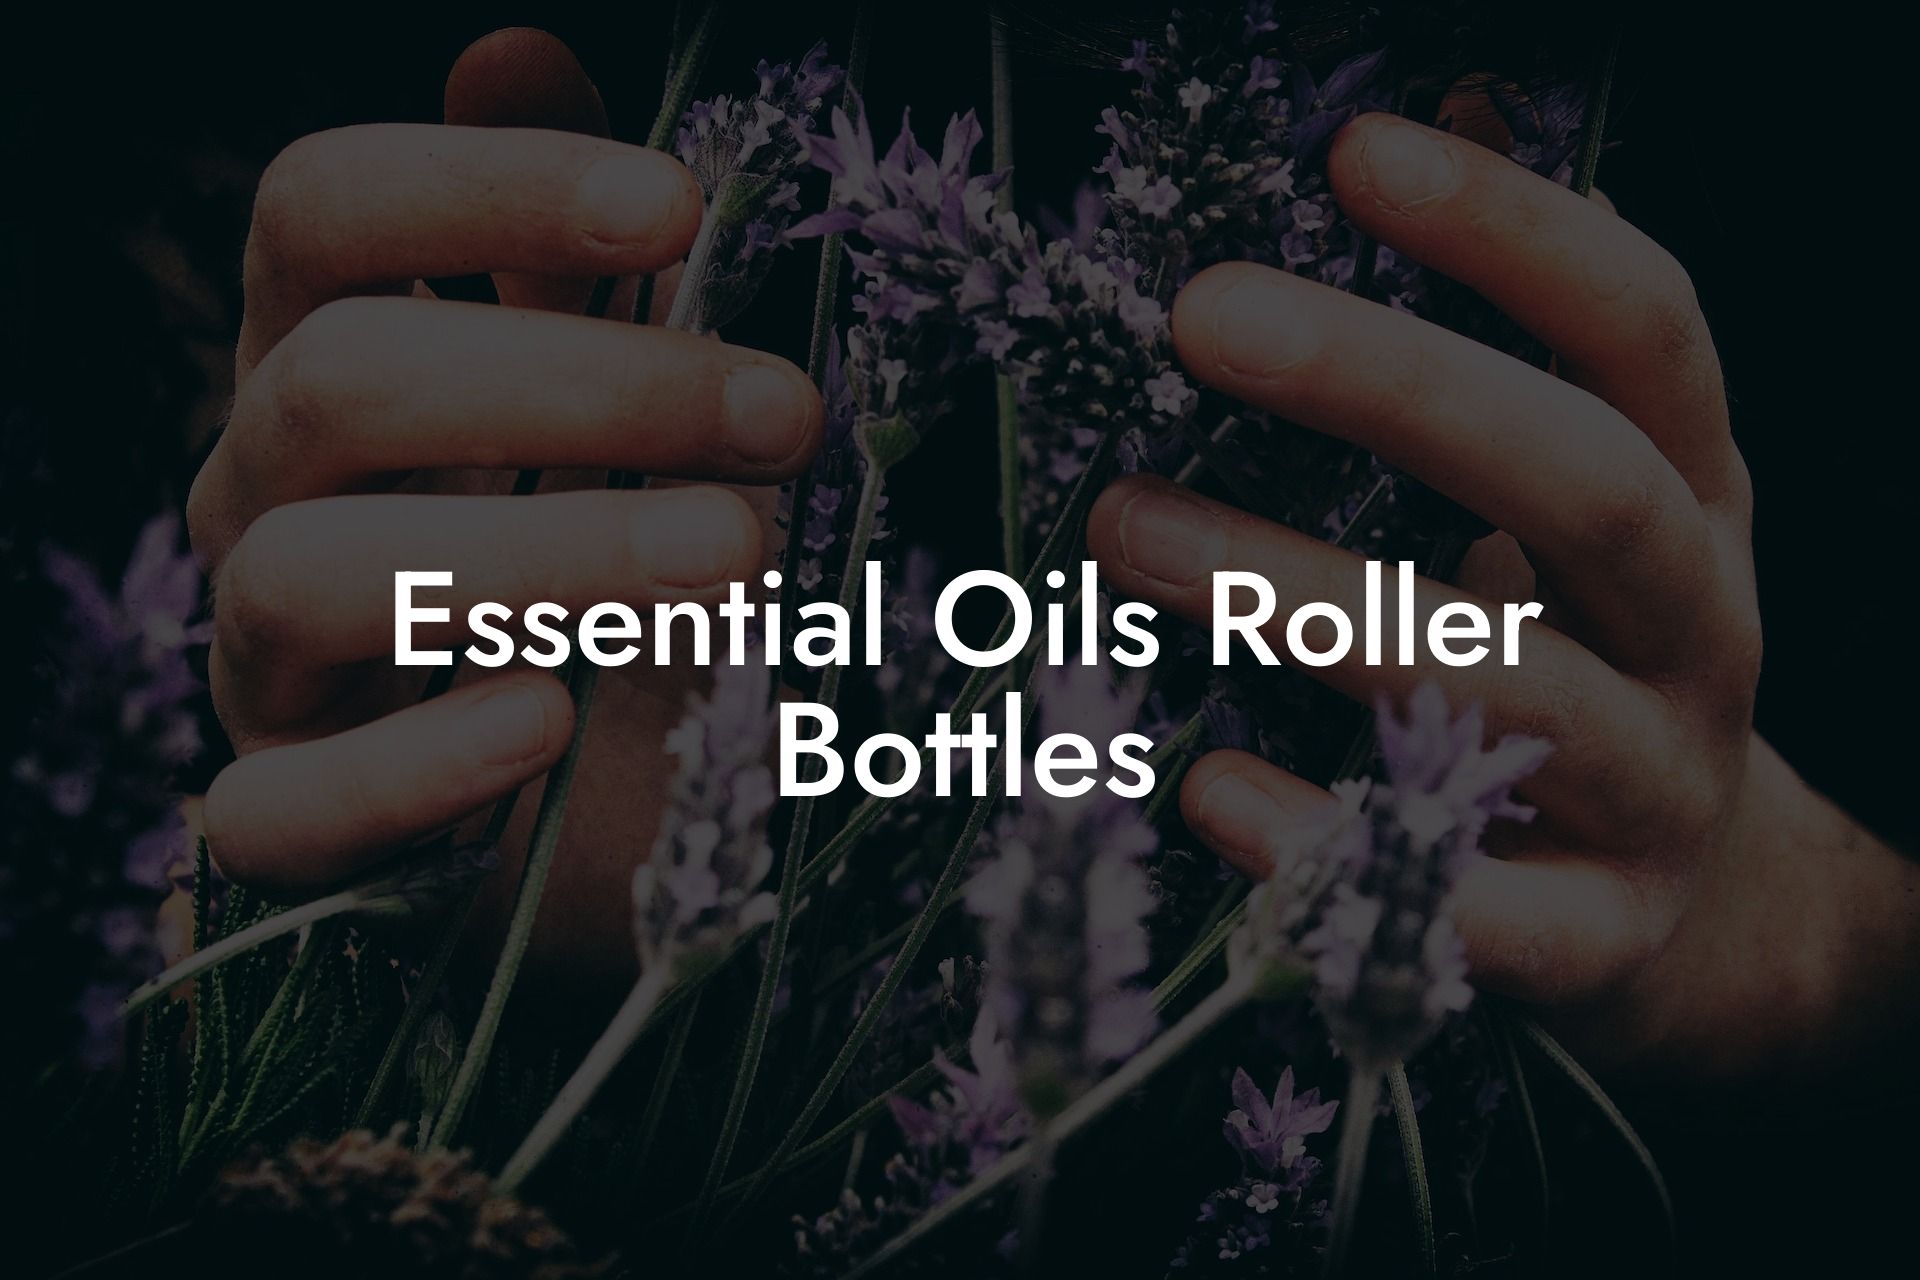 Essential Oils Roller Bottles